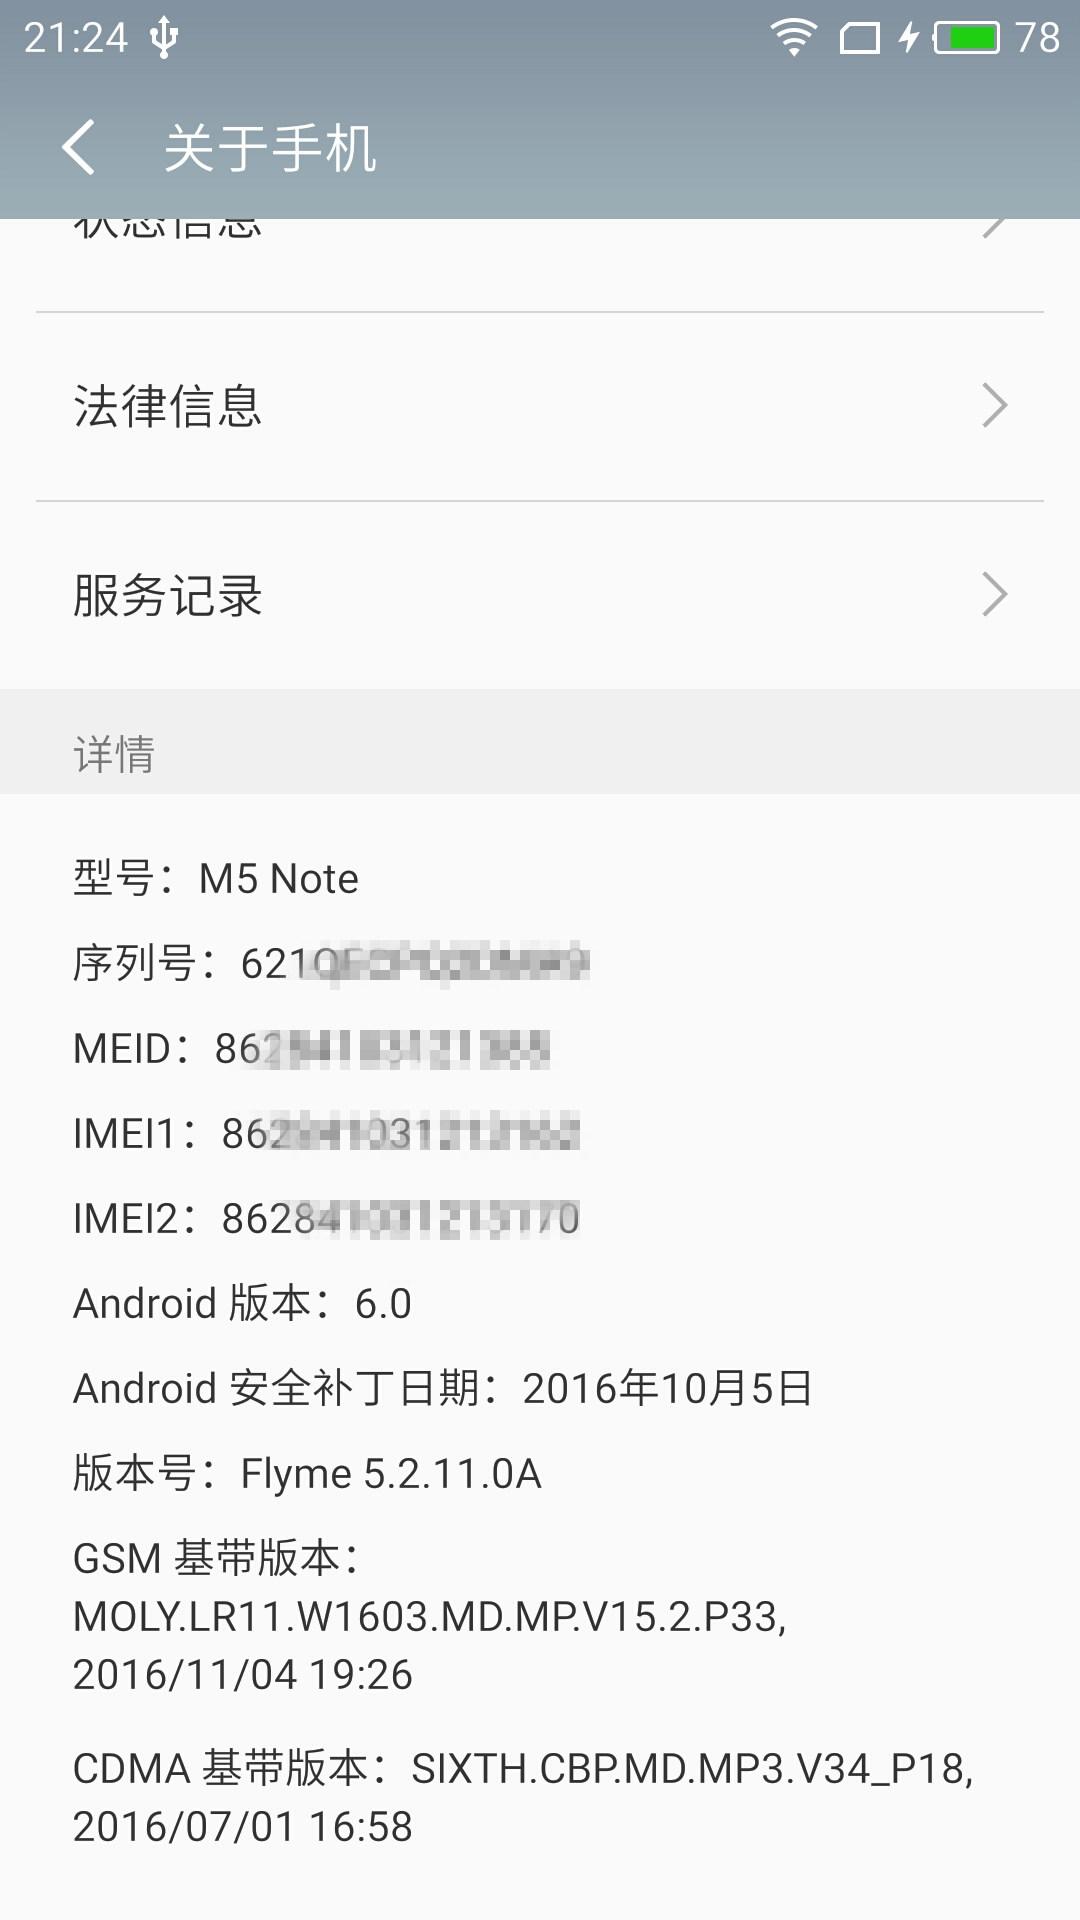 千元之王魅蓝Note5全面评测 给我一个不买的理由